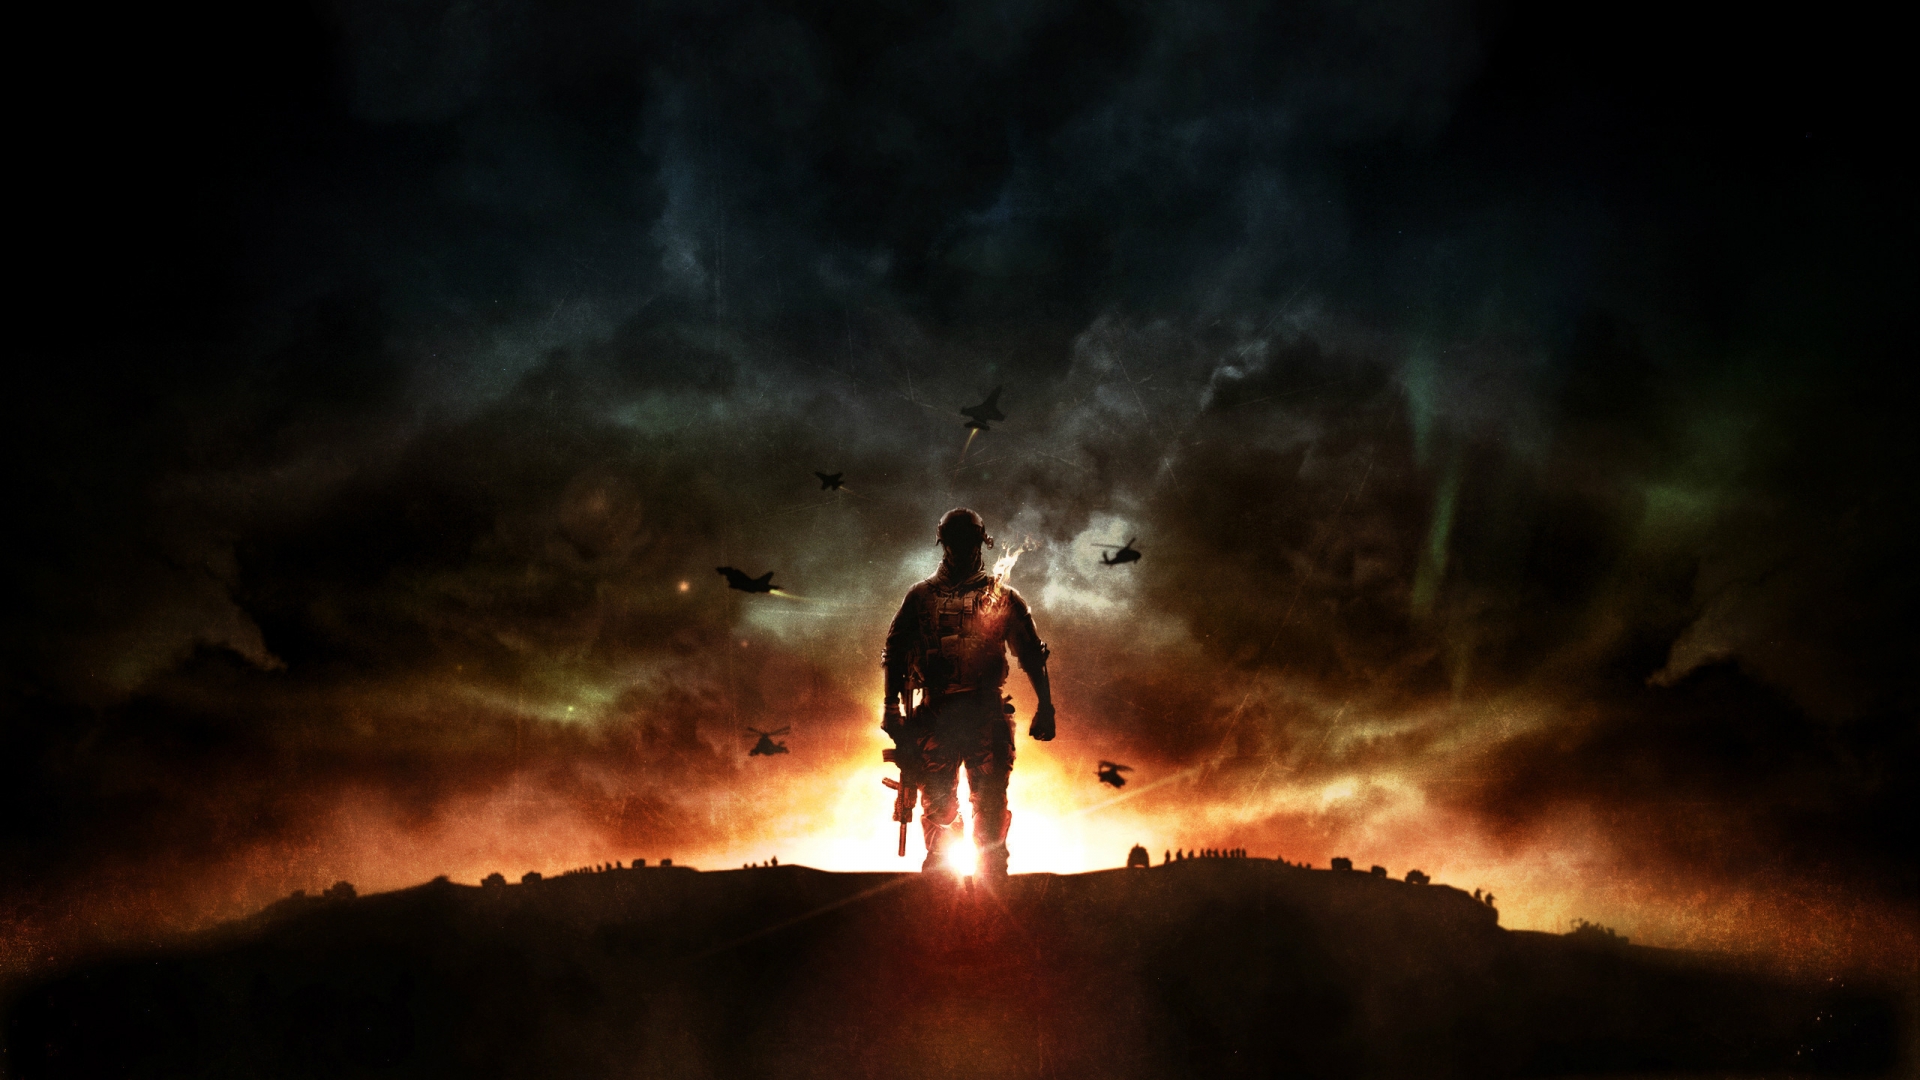 Battlefield 4 Sunset War for 1920 x 1080 HDTV 1080p resolution